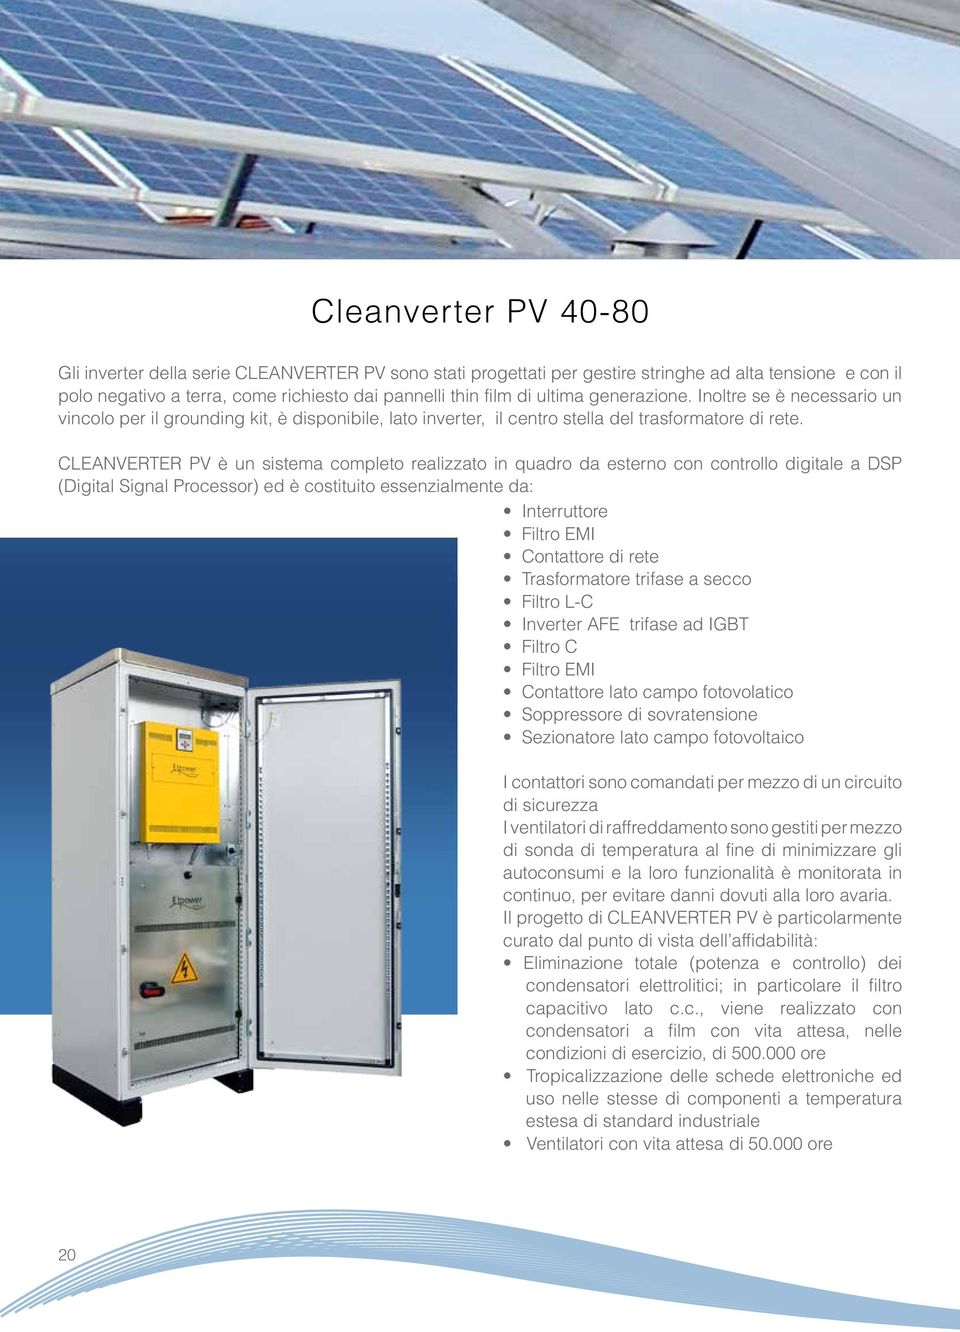 PV è un sistema completo realizzato in quadro da esterno con controllo digitale a DSP (Digital Signal Processor) ed è costituito essenzialmente da: Interruttore Filtro EMI Contattore di rete